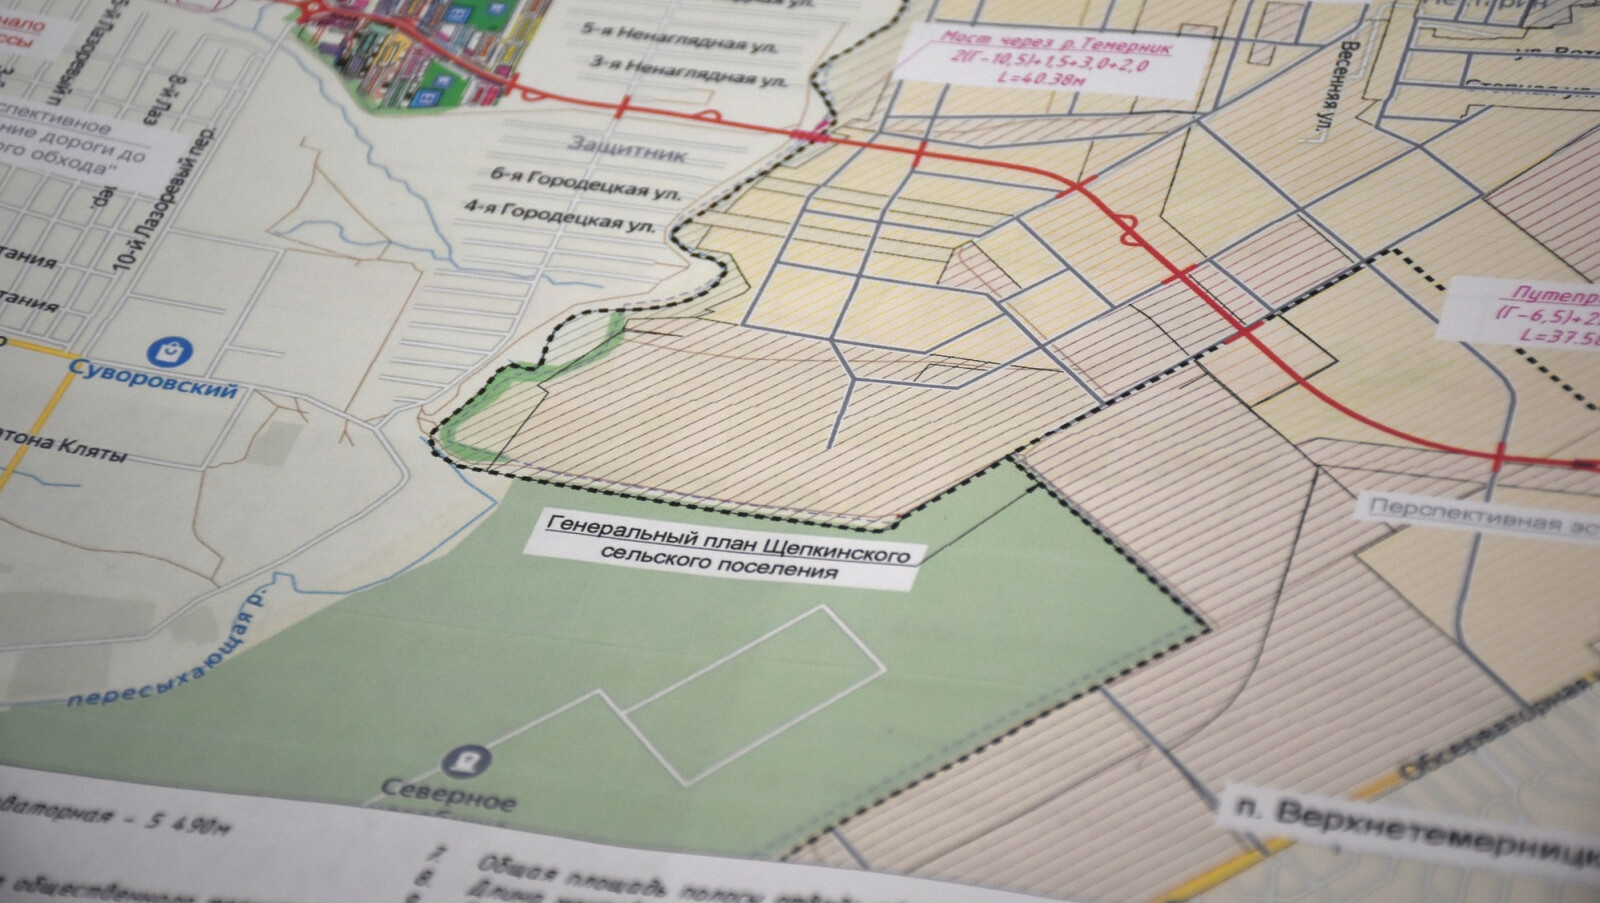 Завершена разработка документации для новой дороги в районе Суворовский в Ростове